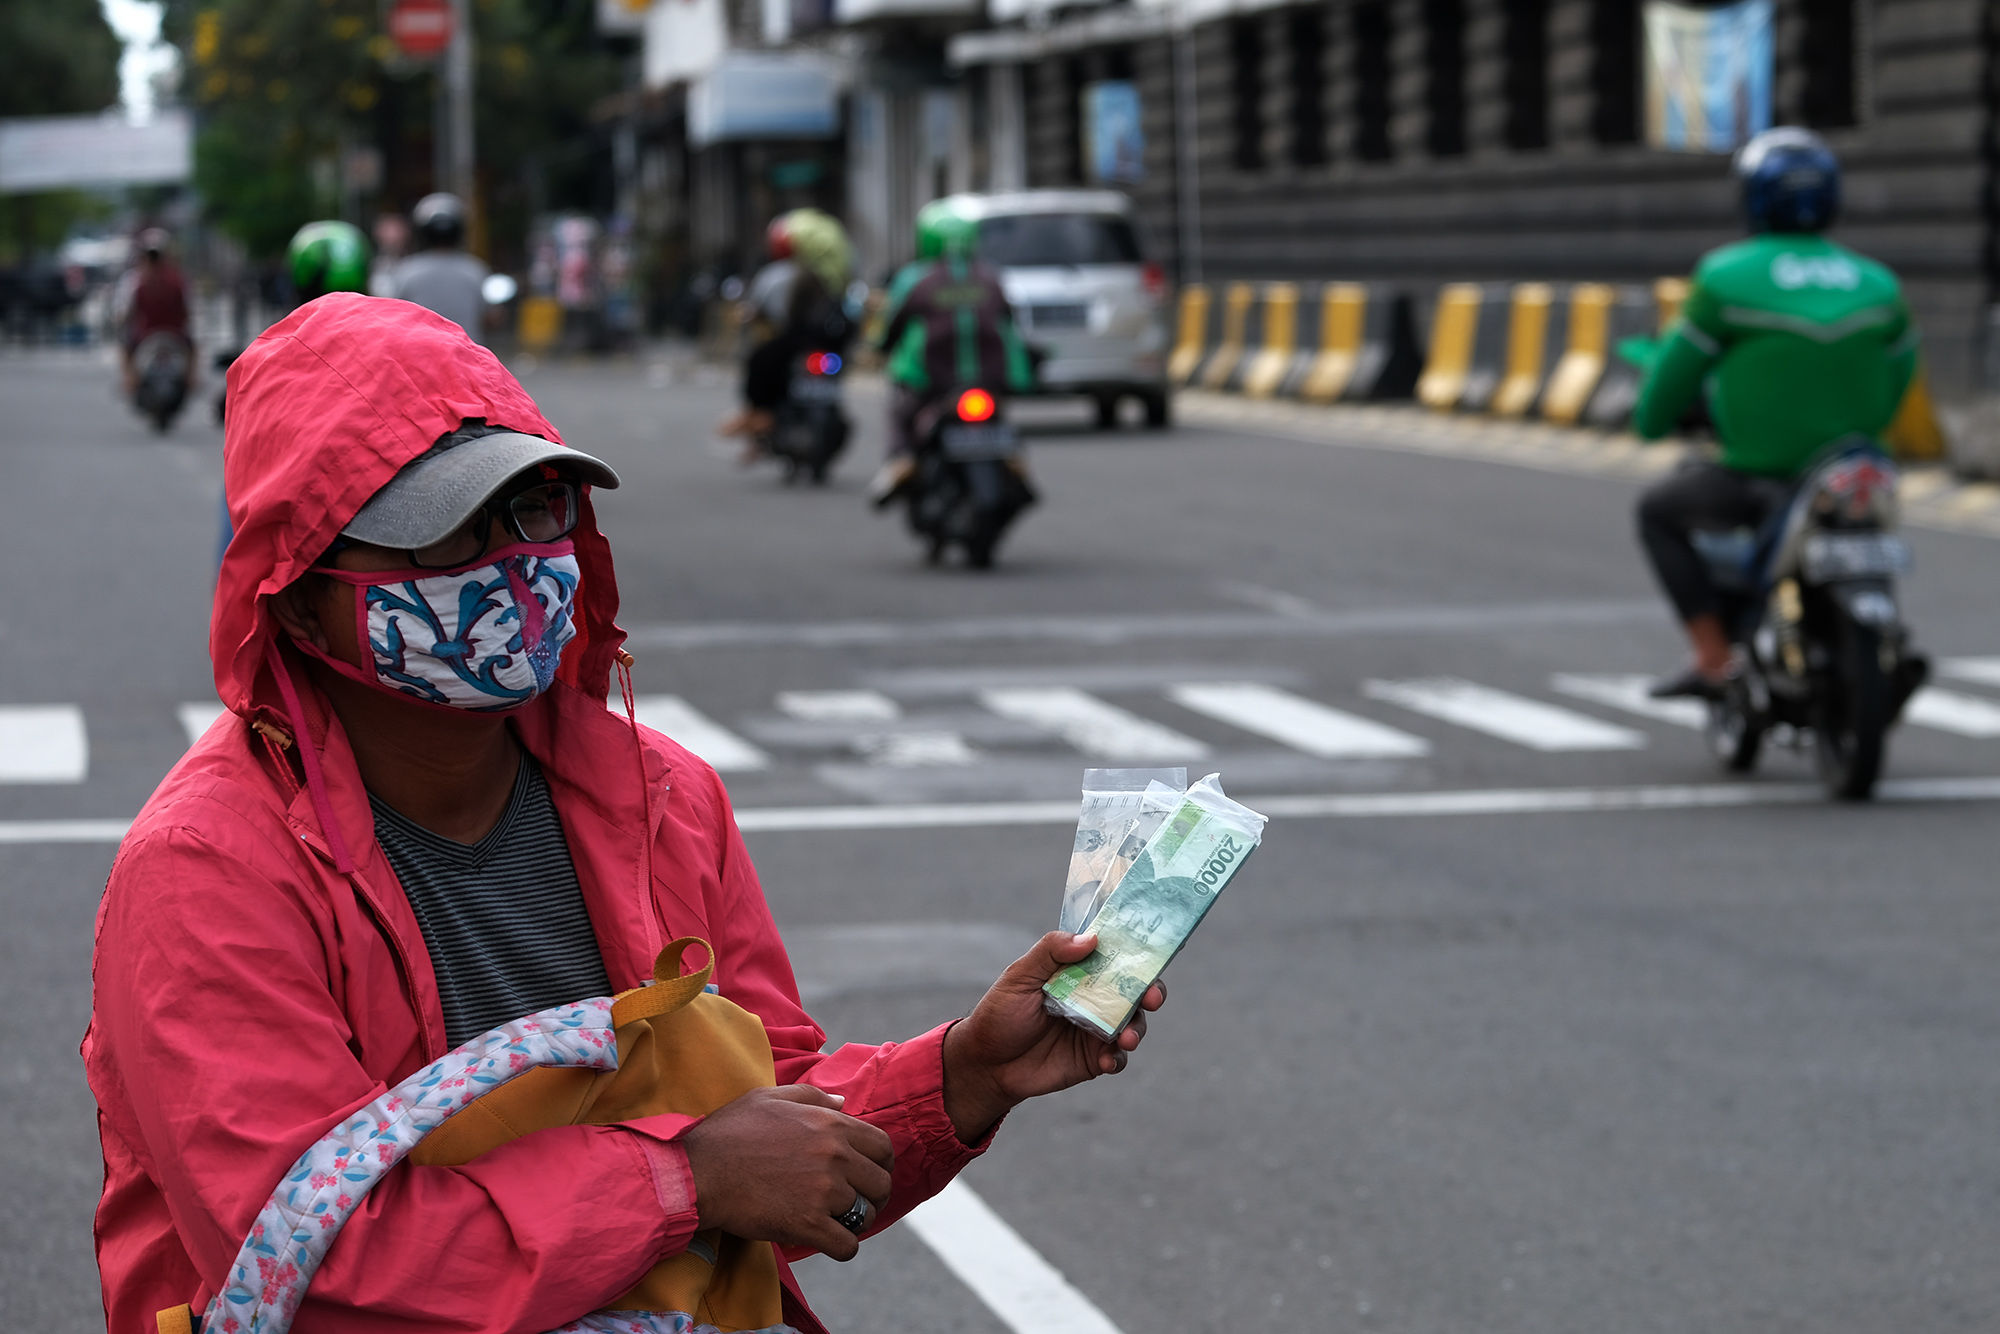 <p>Penjual jasa penukaran uang menunggu konsumen di kawasan Kota Tua, Jakarta Barat, Sabtu 23 Mei 2020. Memasuki H-1 lebaran, warga masih banyak menggunakan jasa penukaran uang di pinggir jalan tersebut guna mendapatkan uang kertas baru pecahan Rp1.000 hingga Rp20.000, dengan biaya jasa sebesar Rp5000. Foto: Ismail Pohan/TrenAsia</p>
